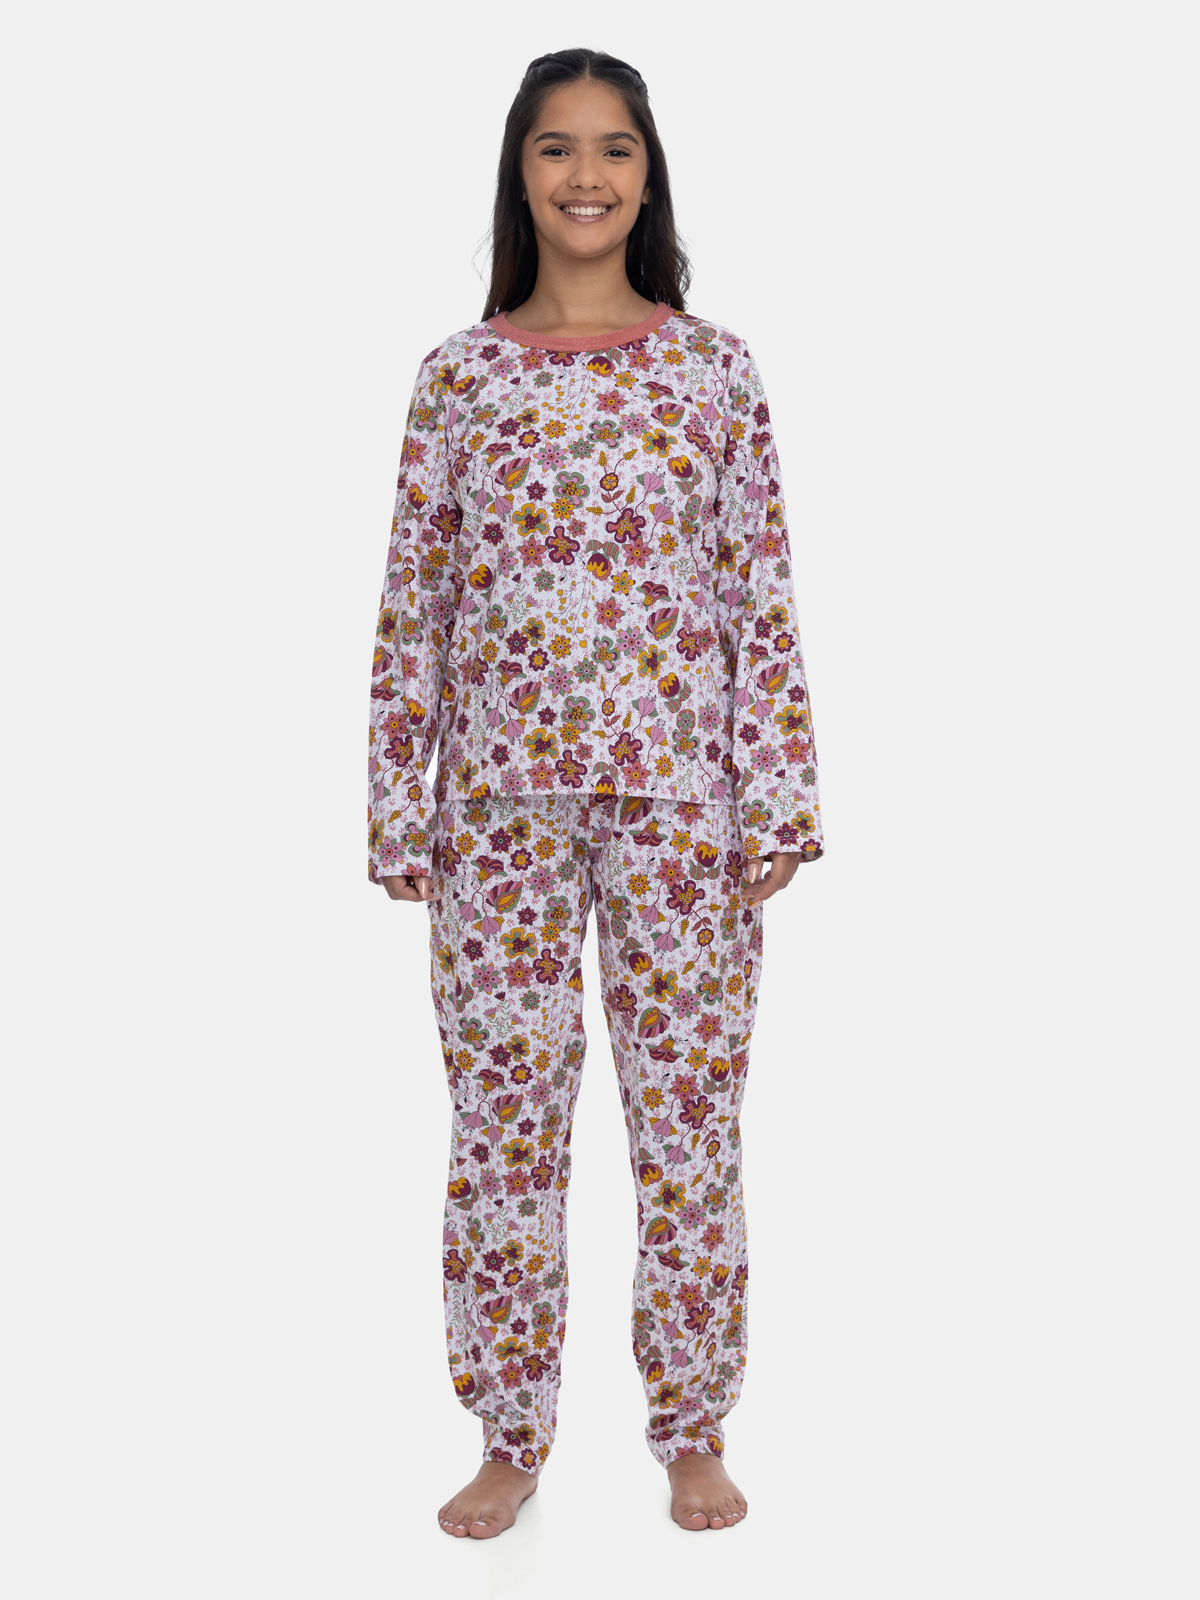 Pijama Manga Longa e Calça